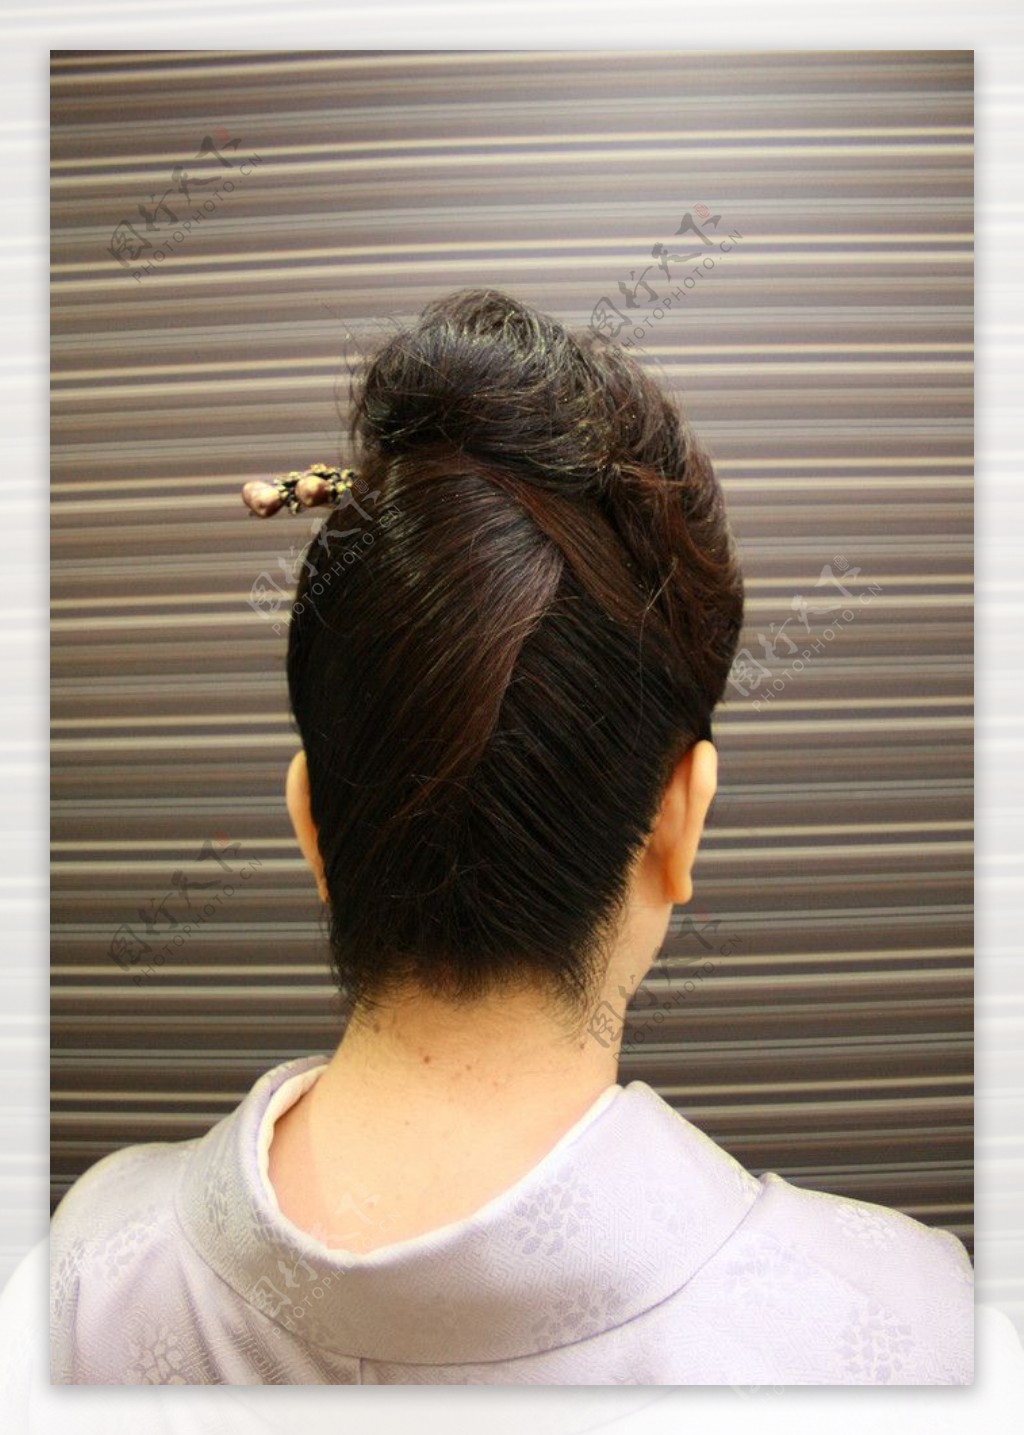 头部后脑勺日式发型日本女士图片